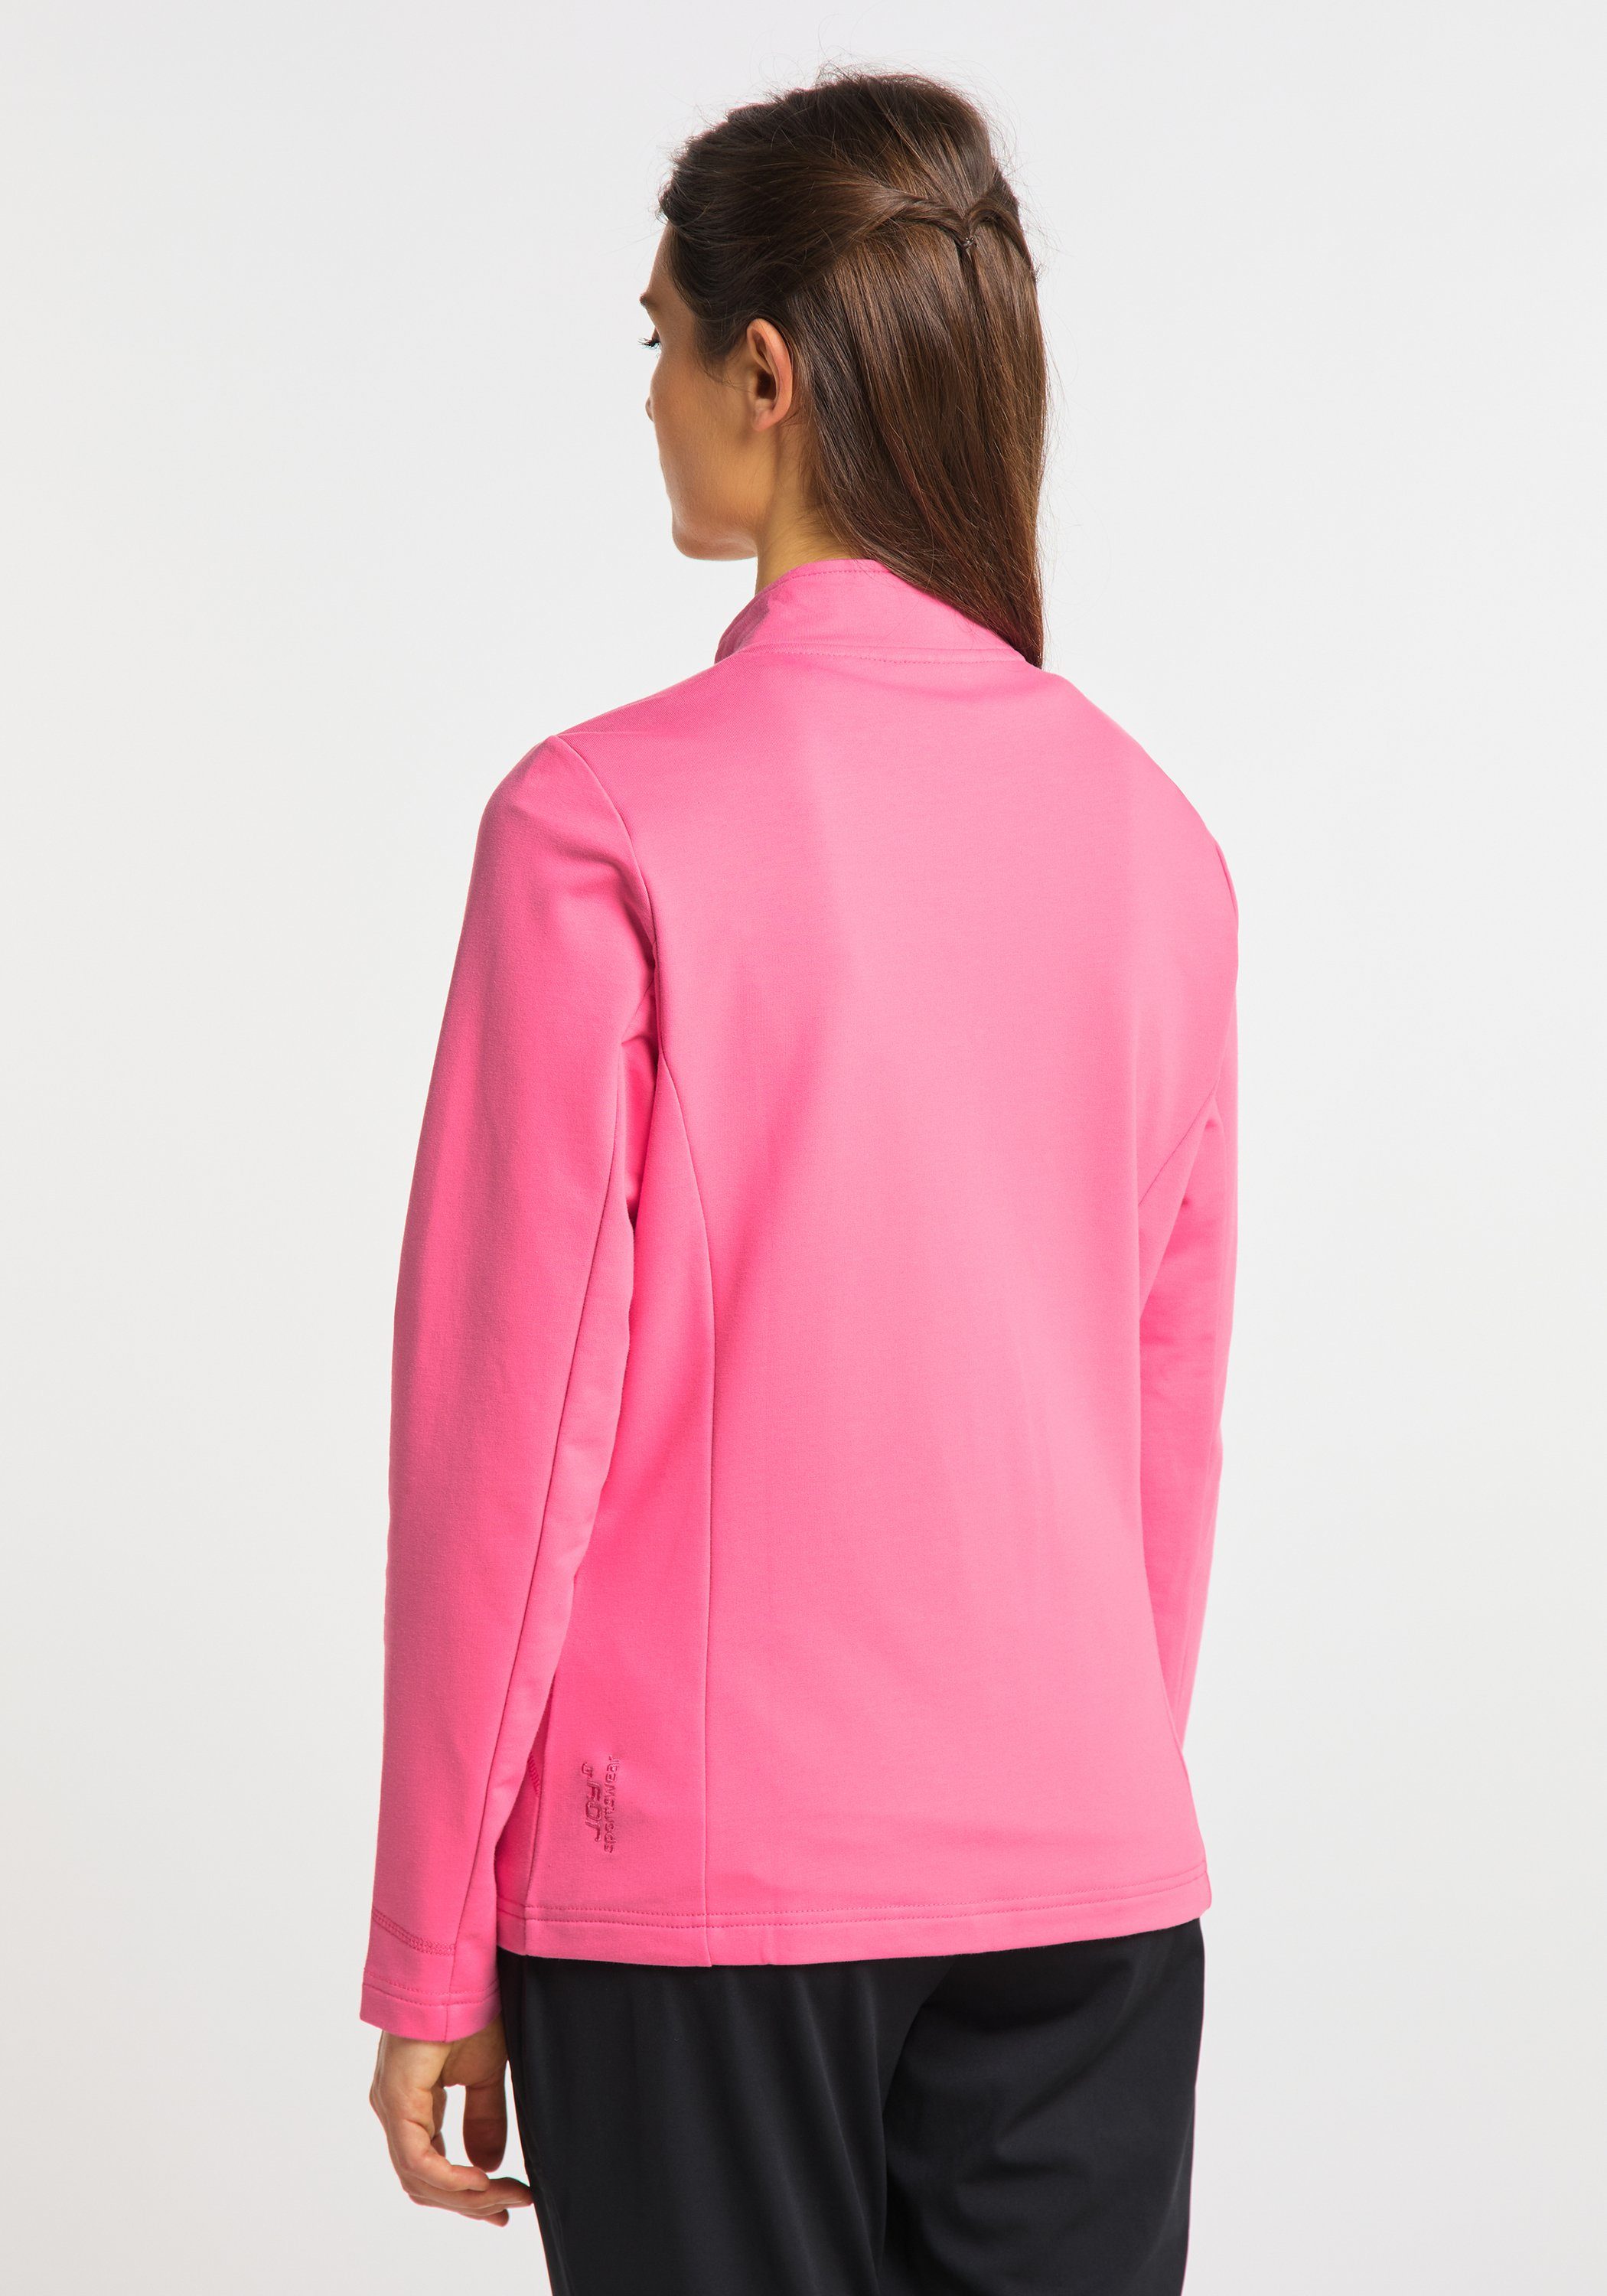 pink DORIT Jacke Joy camelia Sportswear Trainingsjacke